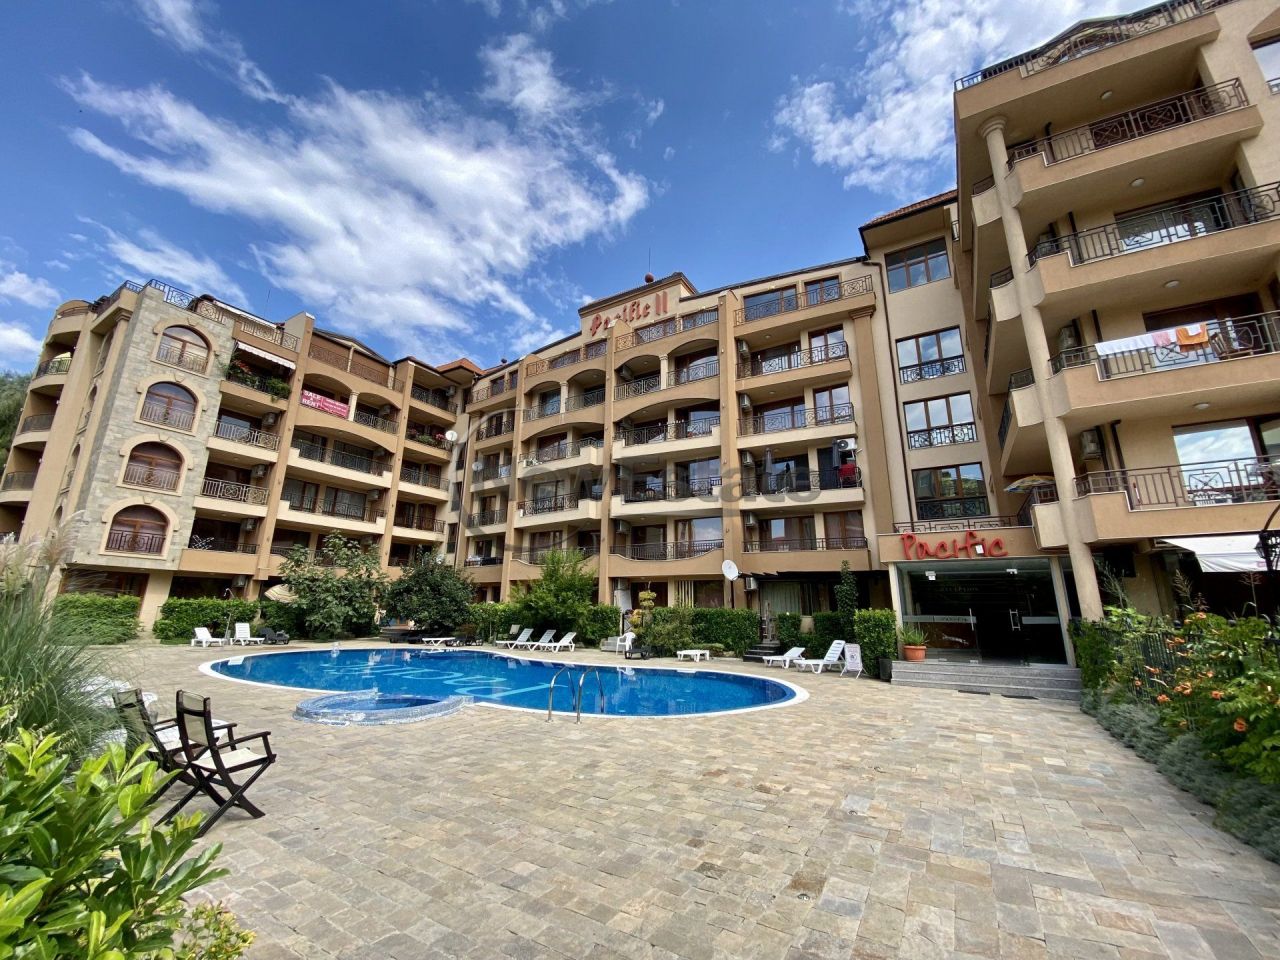 Apartment at Sunny Beach, Bulgaria, 63 sq.m - picture 1